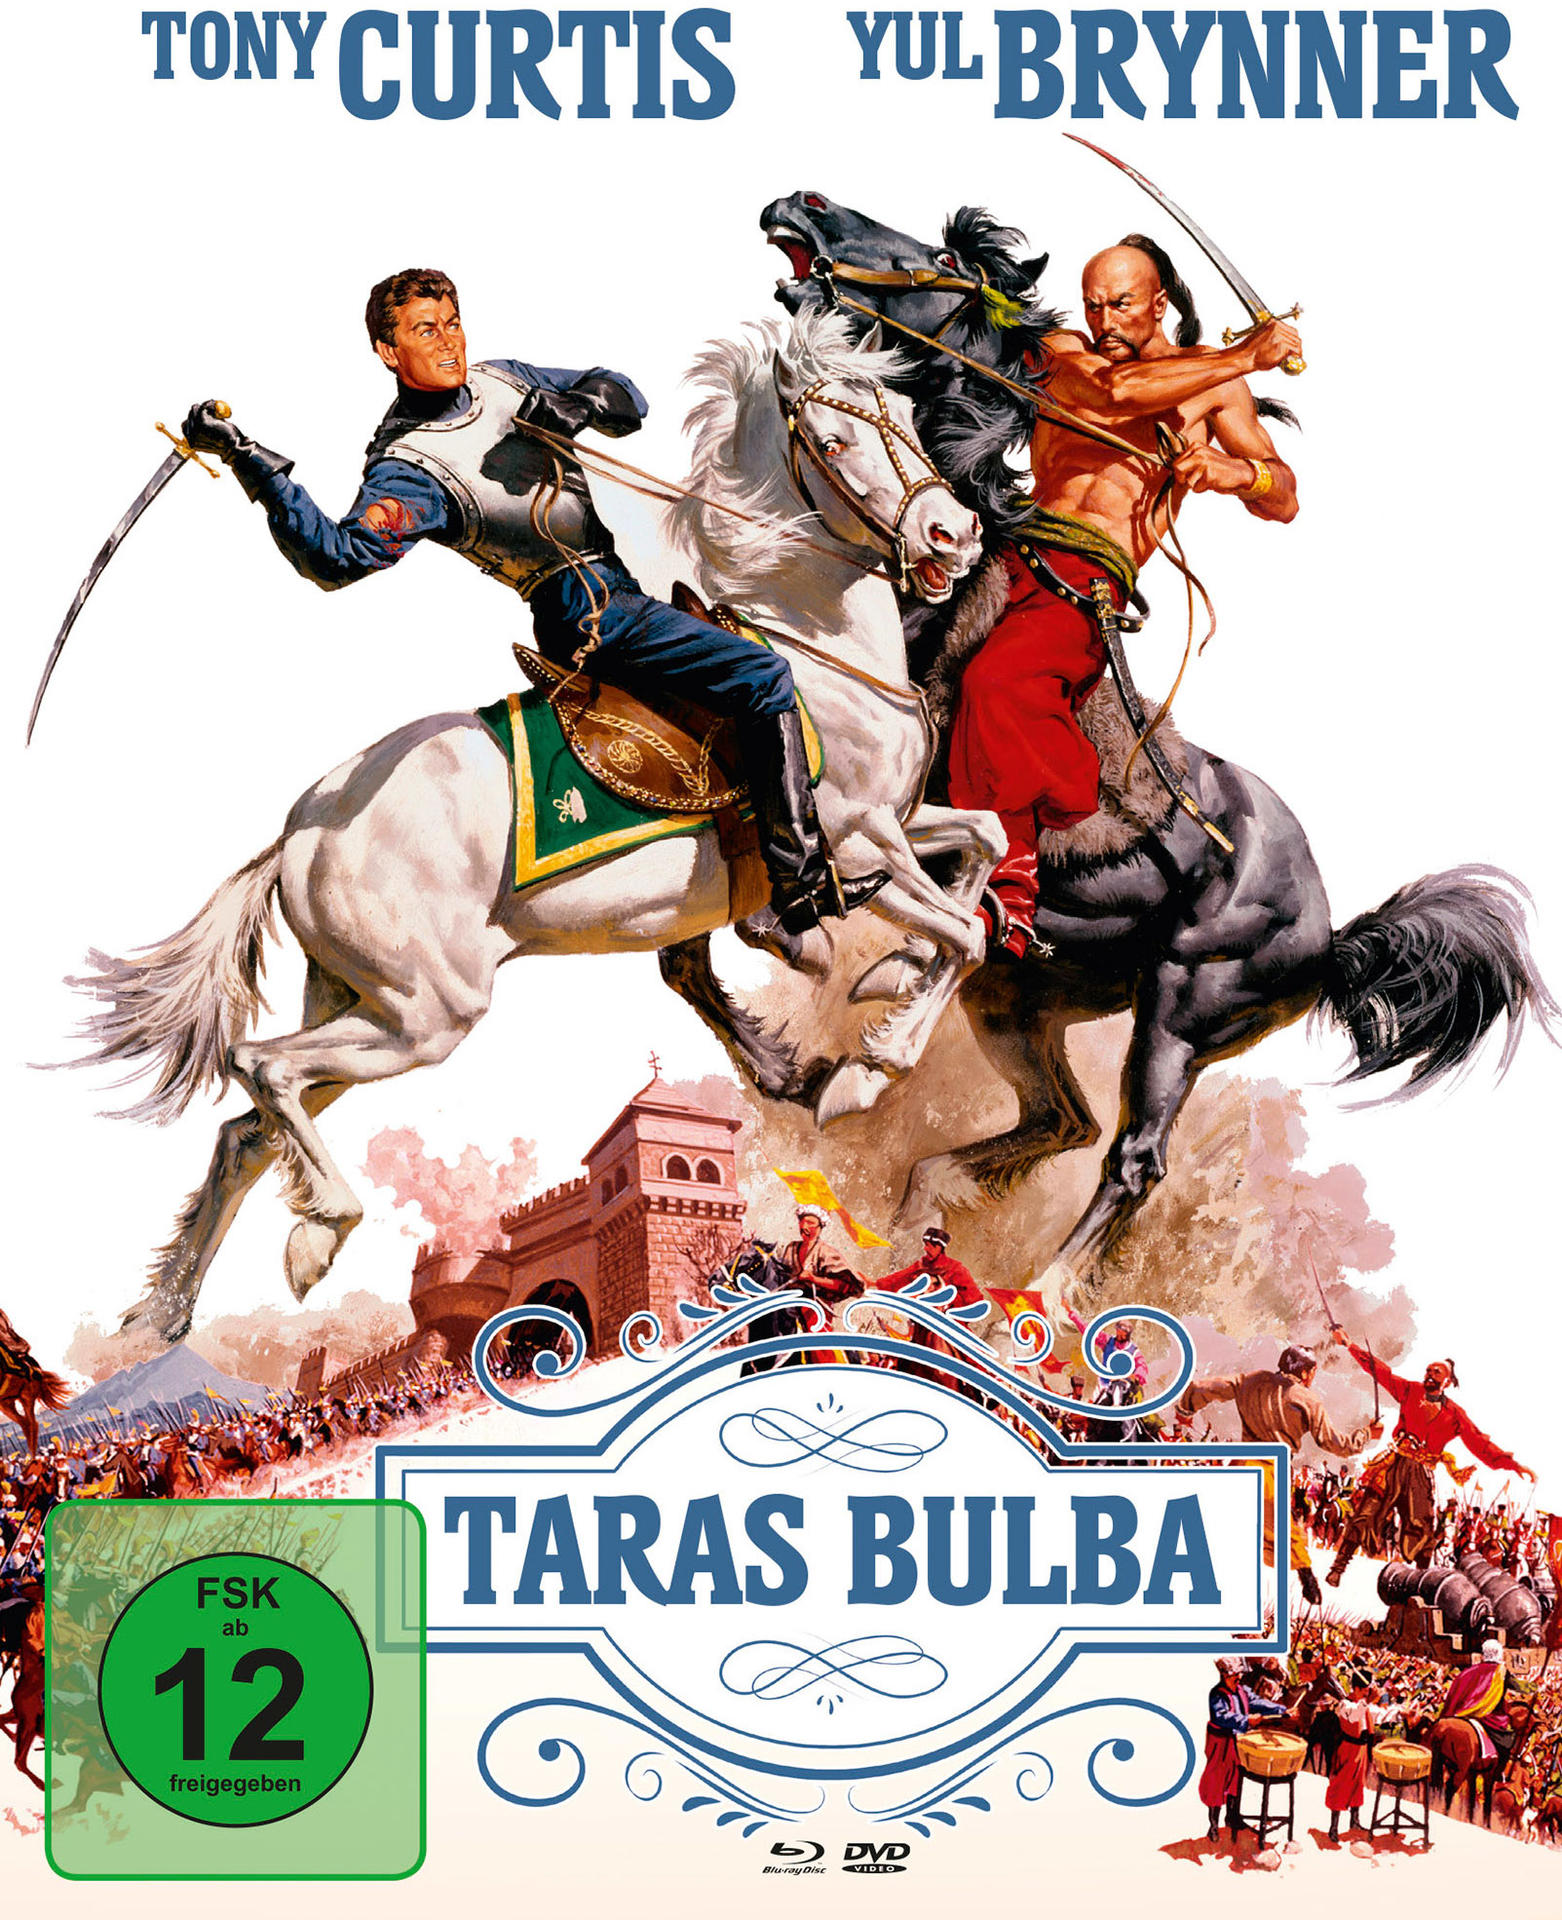 Bulba Taras DVD Blu-ray +